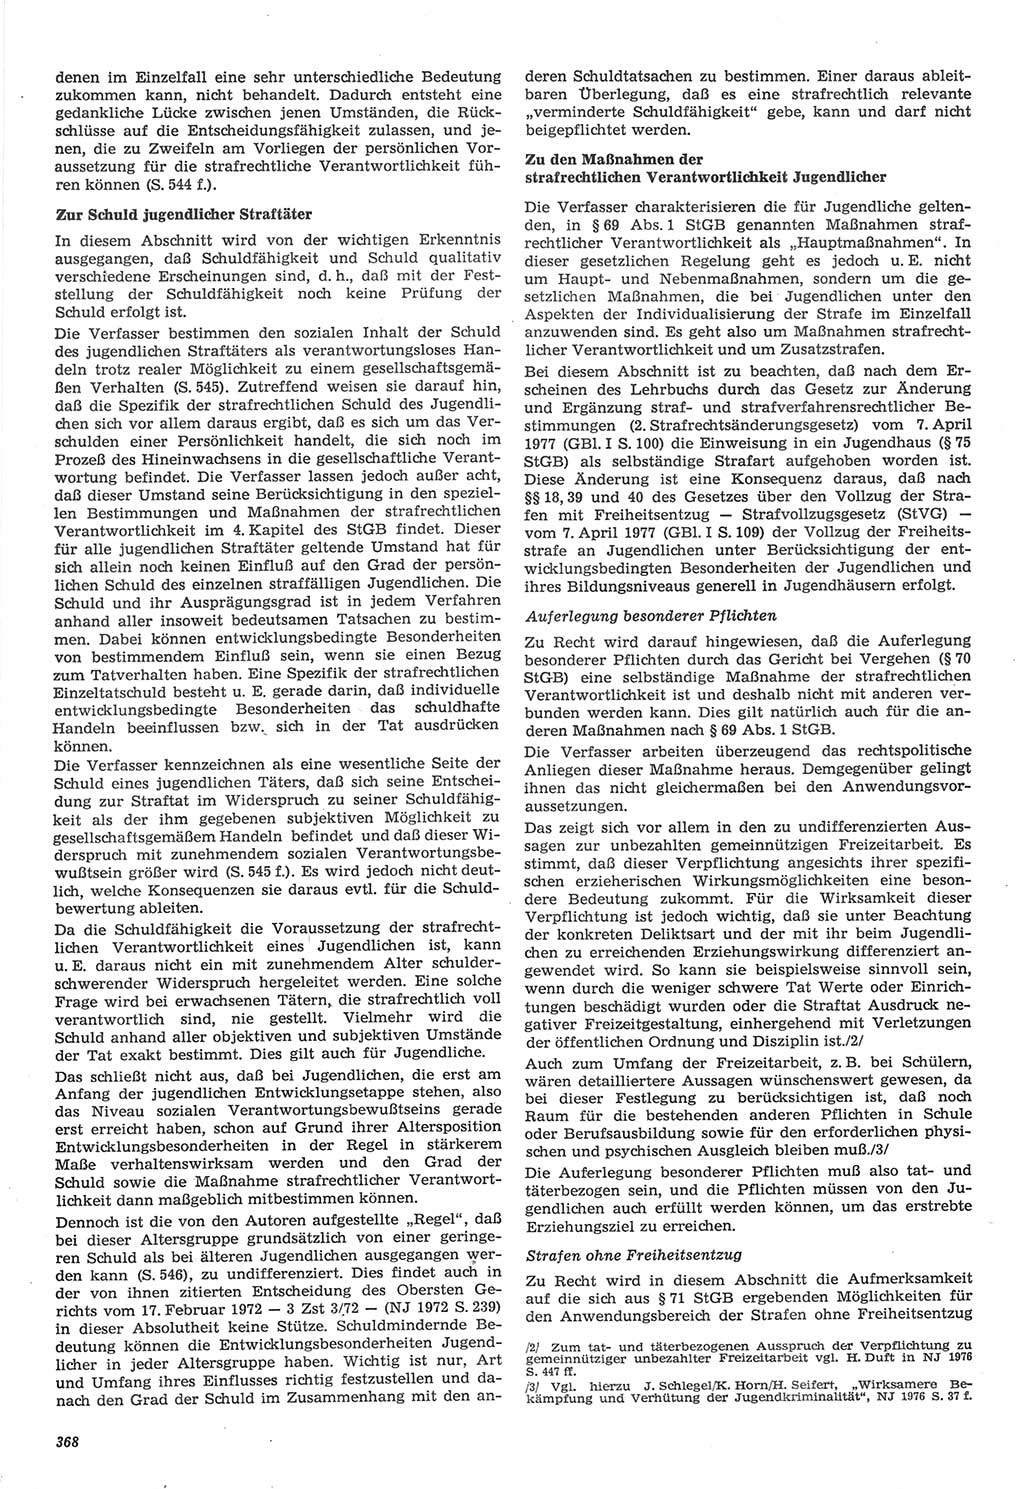 Neue Justiz (NJ), Zeitschrift für Recht und Rechtswissenschaft-Zeitschrift, sozialistisches Recht und Gesetzlichkeit, 31. Jahrgang 1977, Seite 368 (NJ DDR 1977, S. 368)